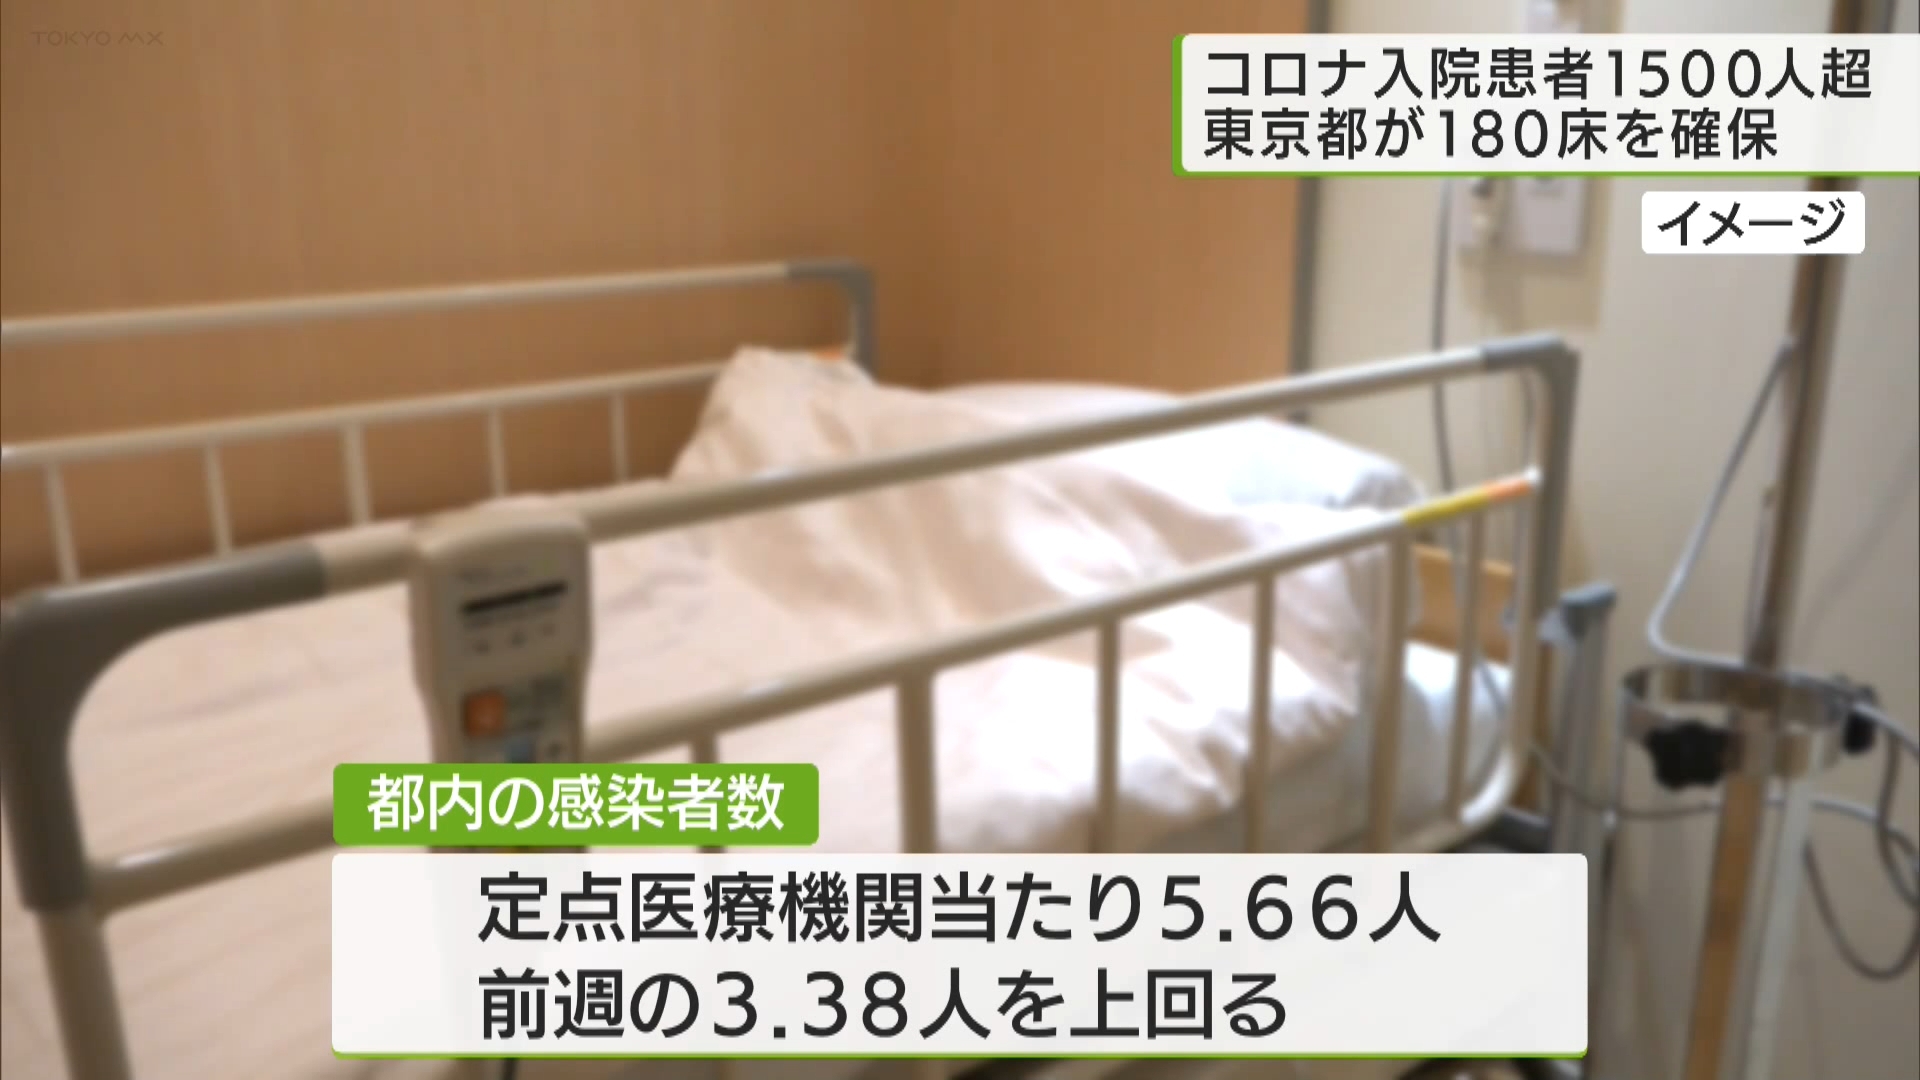 新型コロナの都内の入院患者数が1500人を超えたことを受け、東京都が酸素投与が必要な中等症以上の患者を受け入れるための病床、およそ180床を確保することが分かりました。